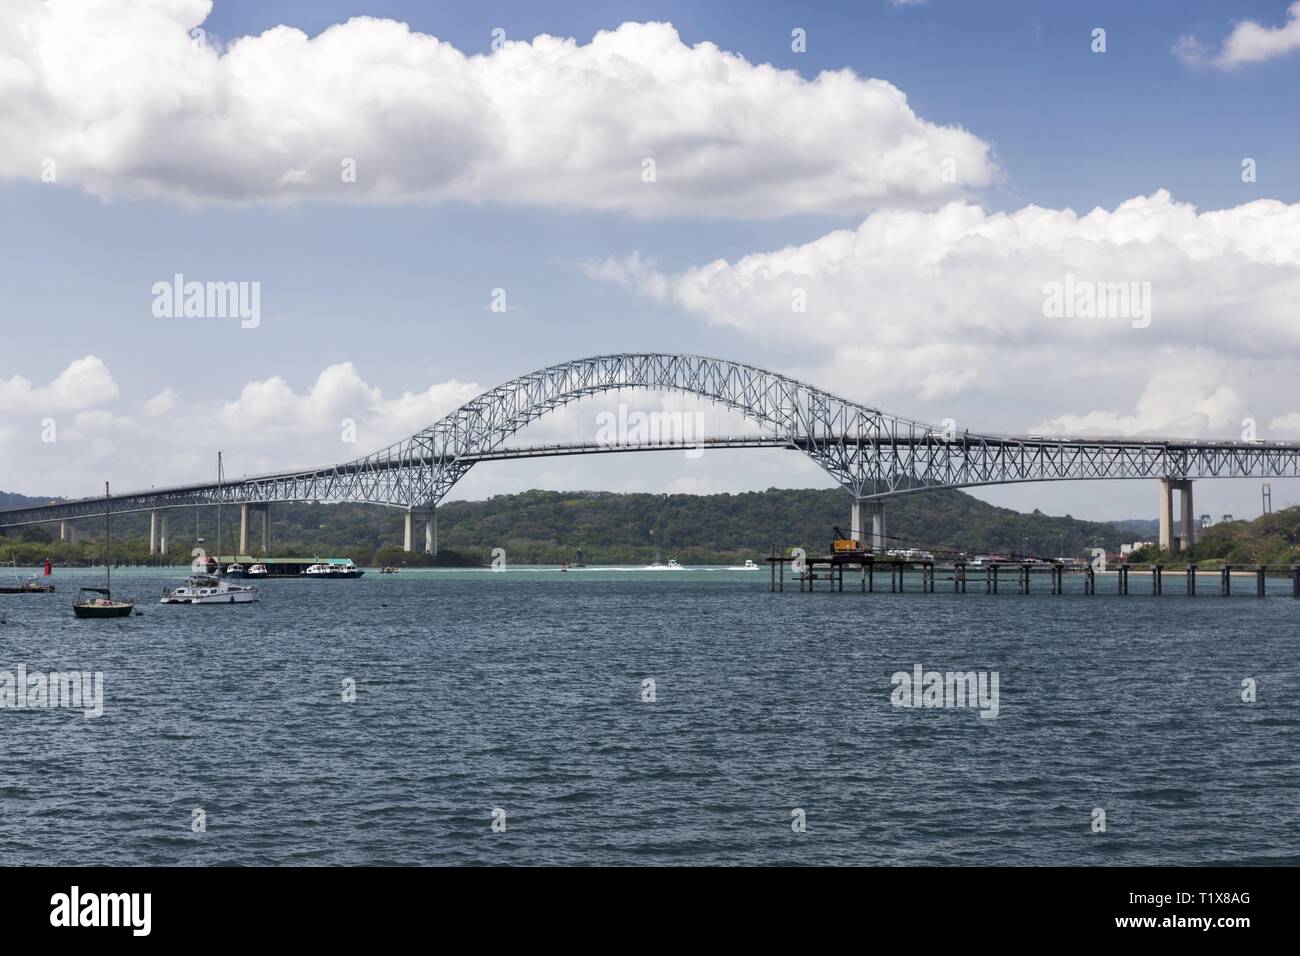 Il Ponte delle Americhe, un famoso punto di riferimento internazionale ponte stradale a Panama che abbraccia il Pacifico ingresso al Canale di Panama Foto Stock